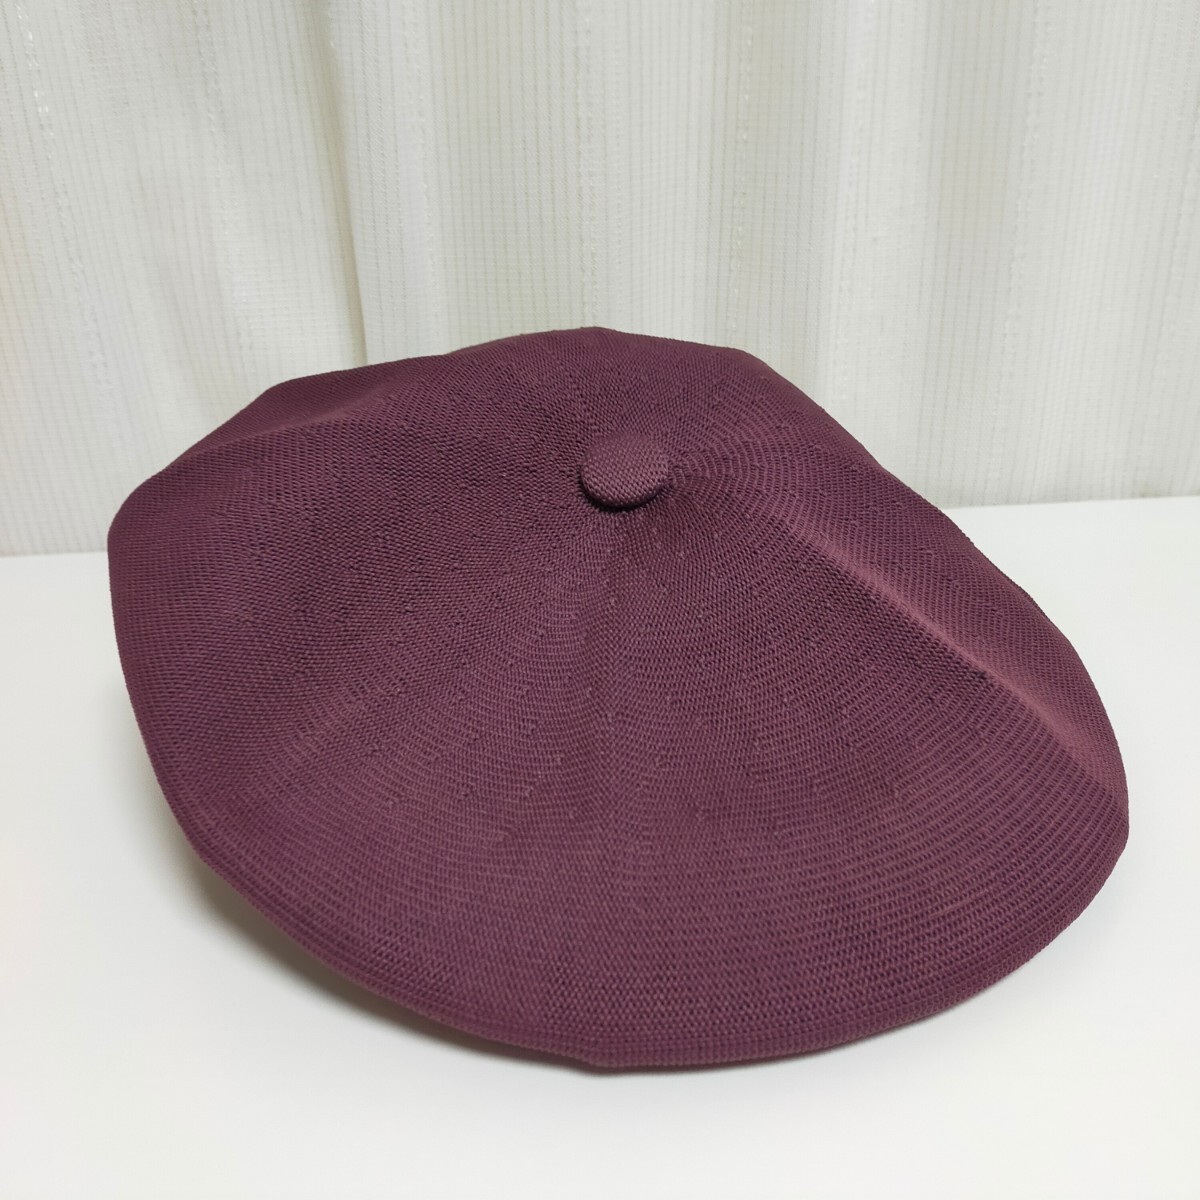  новый товар не использовался с биркой KANGOL Kangol 6757BC TROPIC GALAXY кепка hunting cap шляпа L маленький бобы цвет 